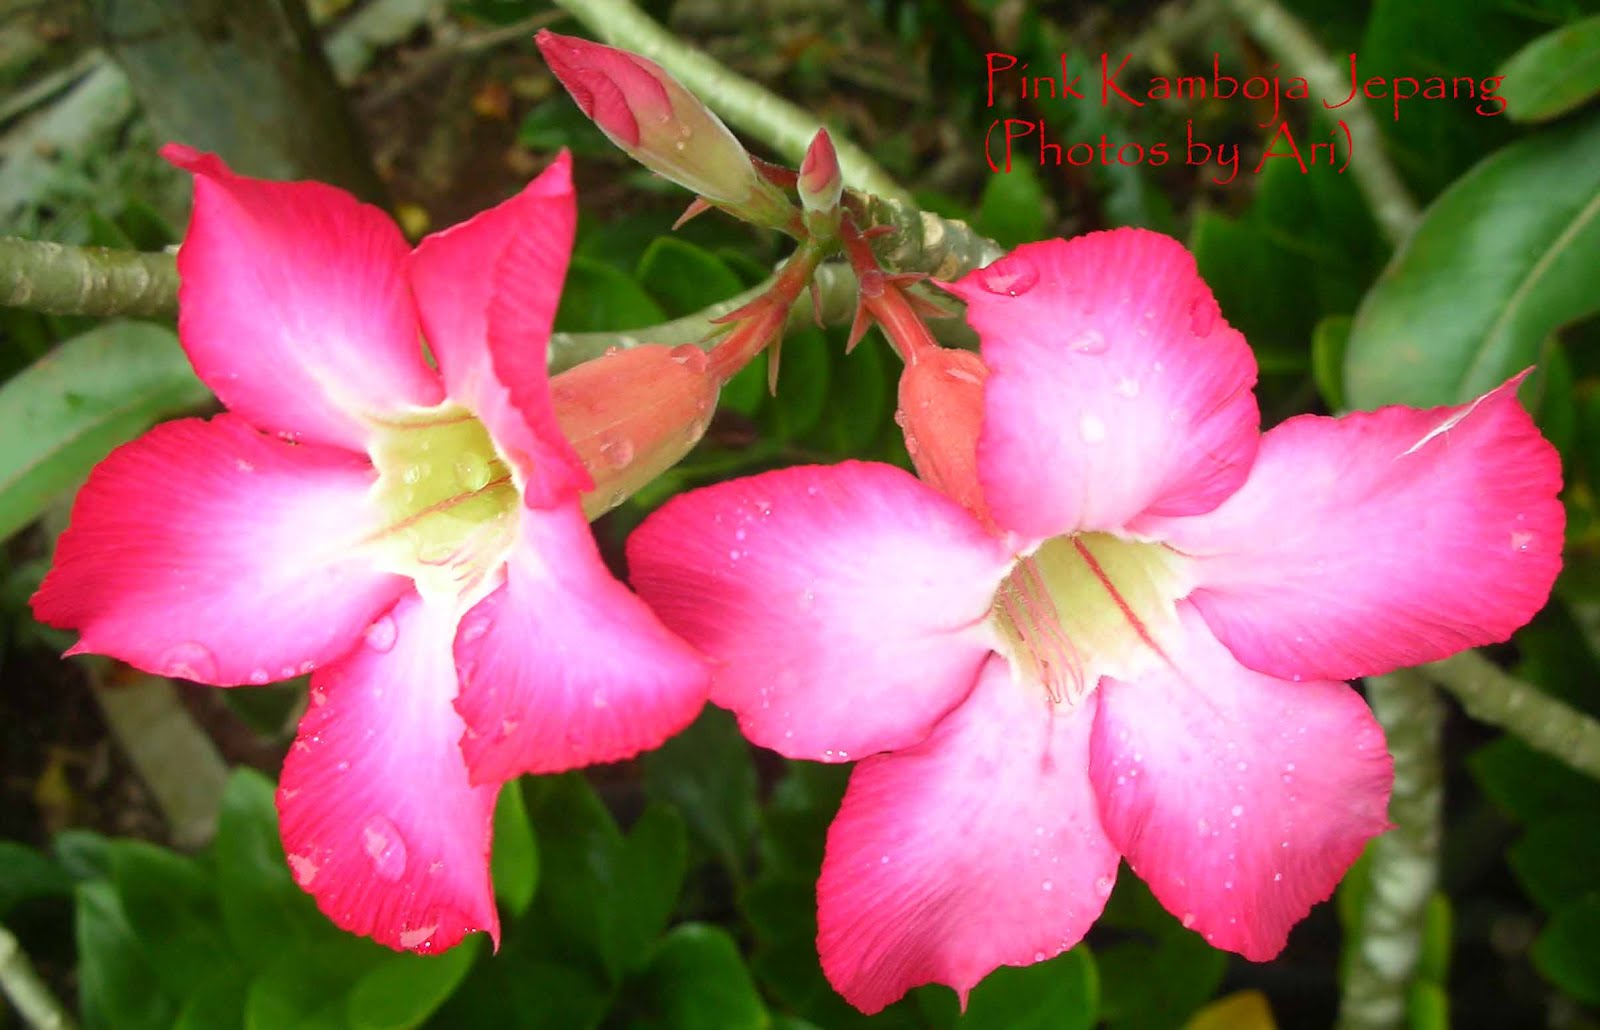 Floristari bunga  kamboja  jepang pink  3